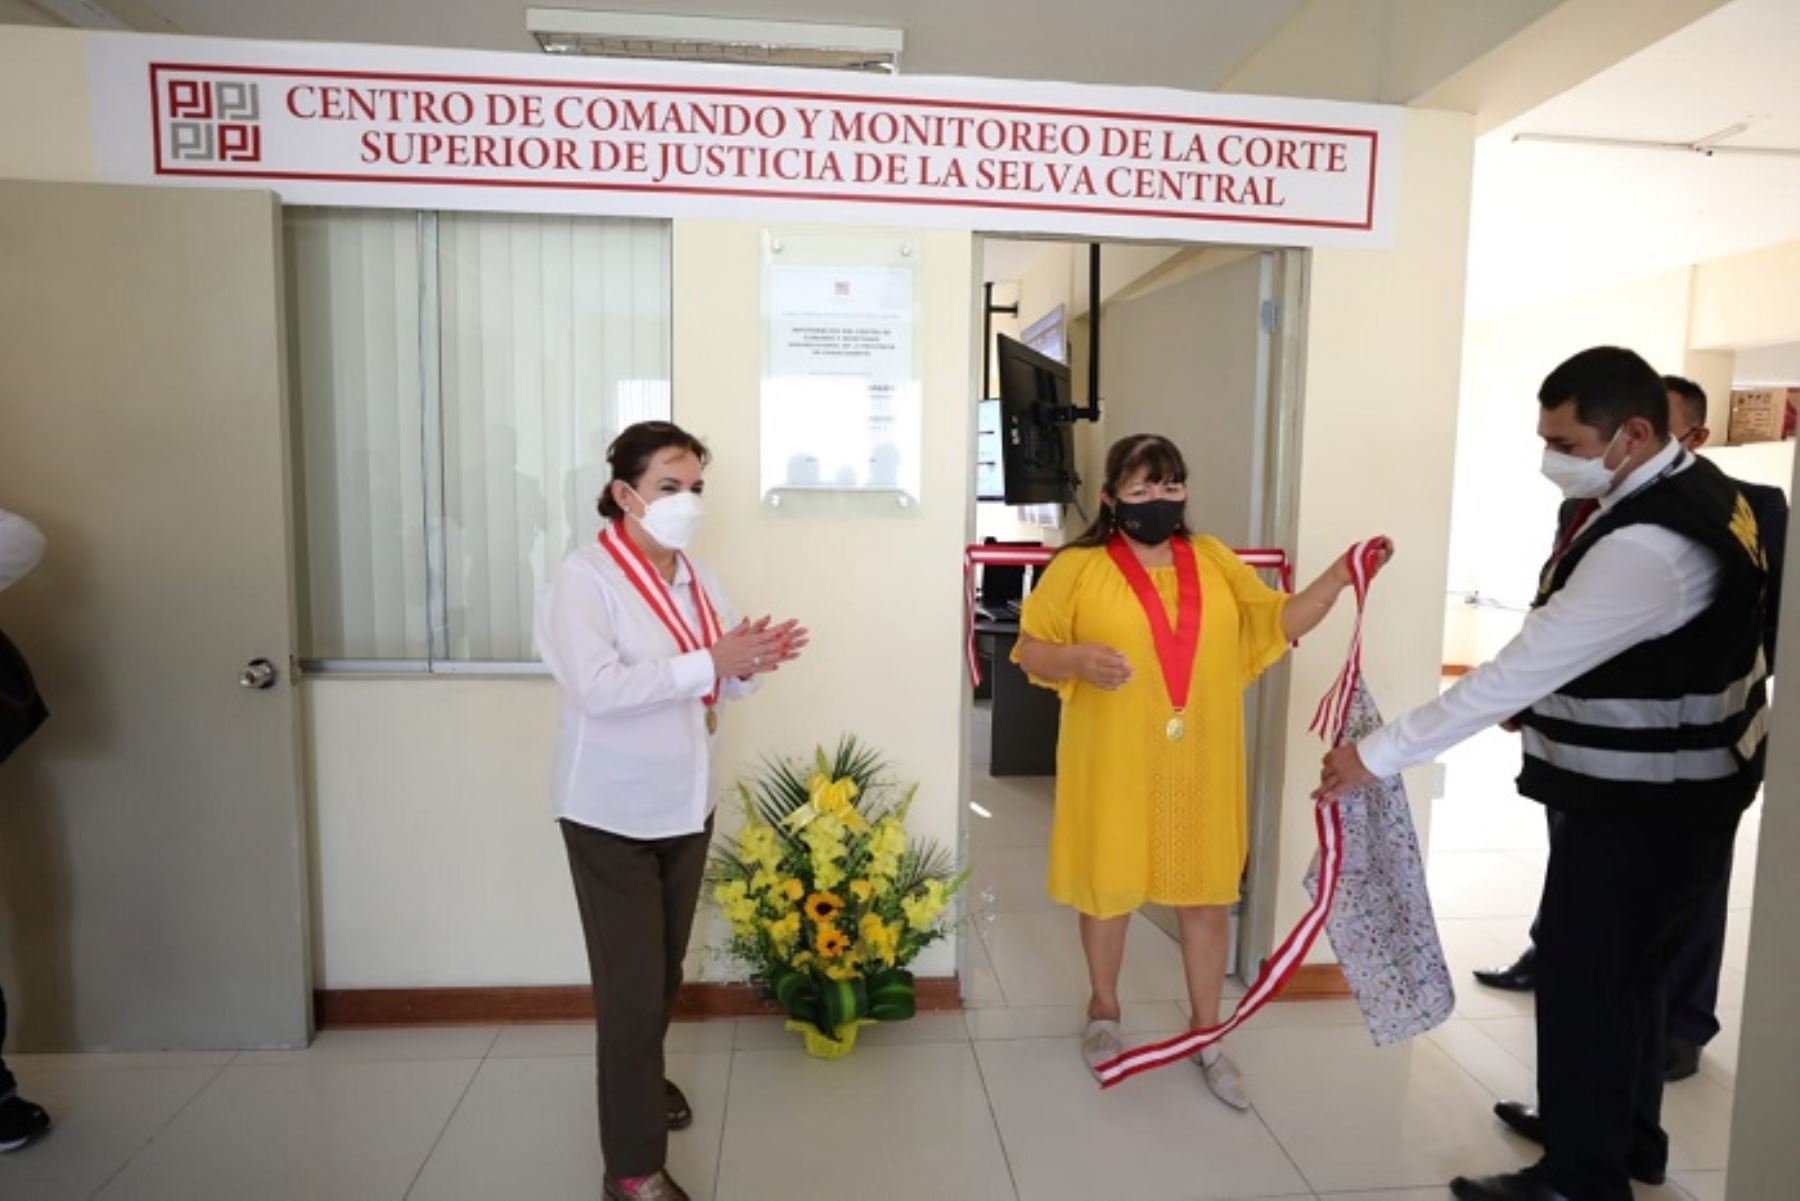 Mejora de justicia: PJ inauguró centro de comando y monitoreo en La Merced-Junín